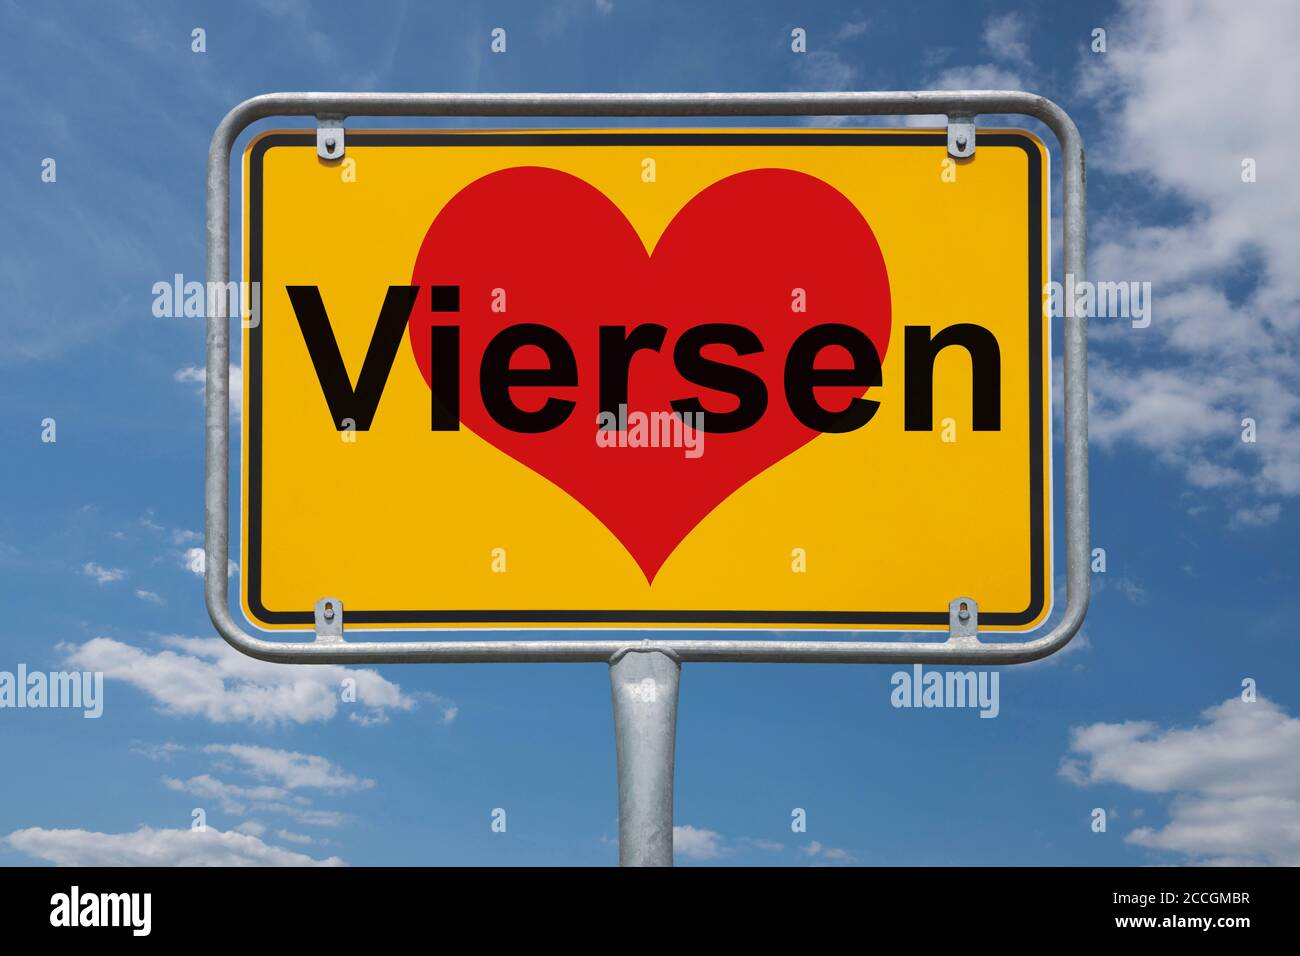 Ortstafel Viersen, Nordrhein-Westfalen, Deutschland | Place name sign Viersen, North Rhine-Westphalia, Germany, Europe Stock Photo